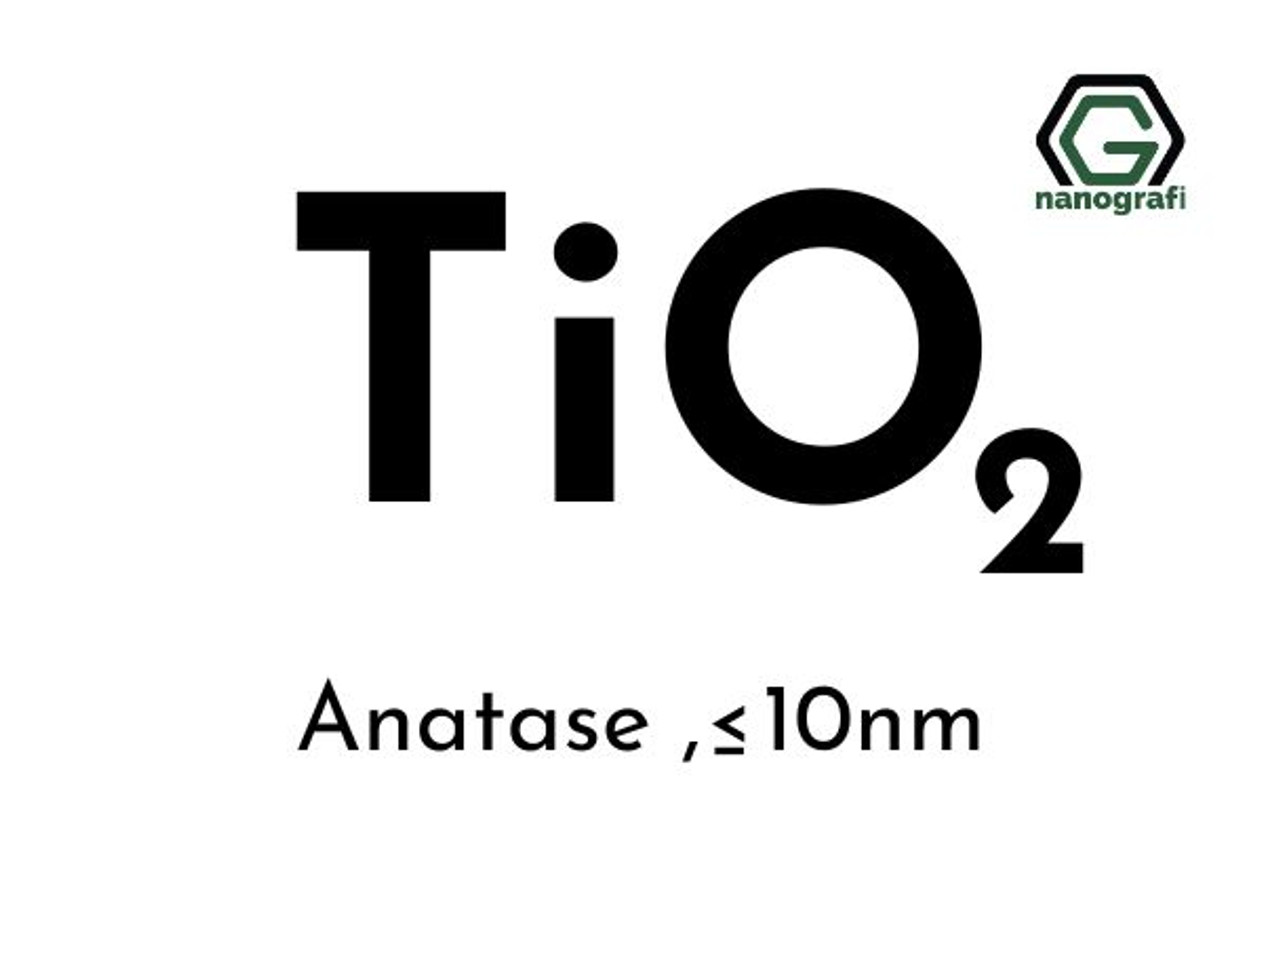 Titanium Dioxide Powder - 10 oz - TiO2 - Non Nano - safety sealed